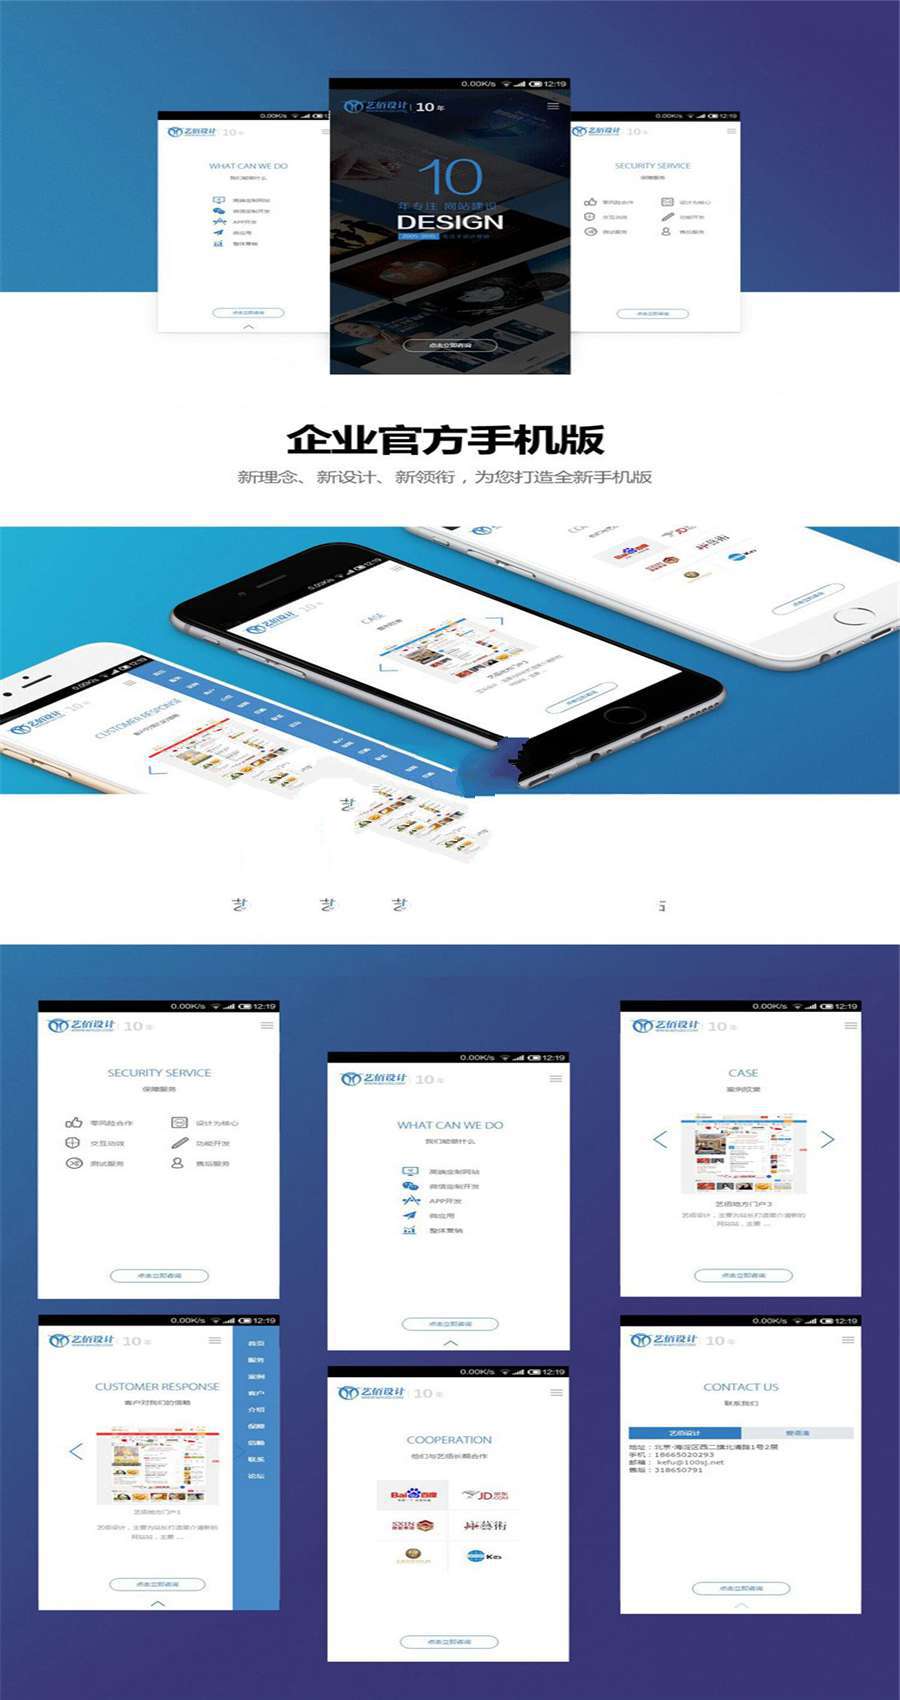 Discuz x3.2模板 艺佰官网响应式网页设计公司模板(自适应手机移动端)gbk版插图(1)